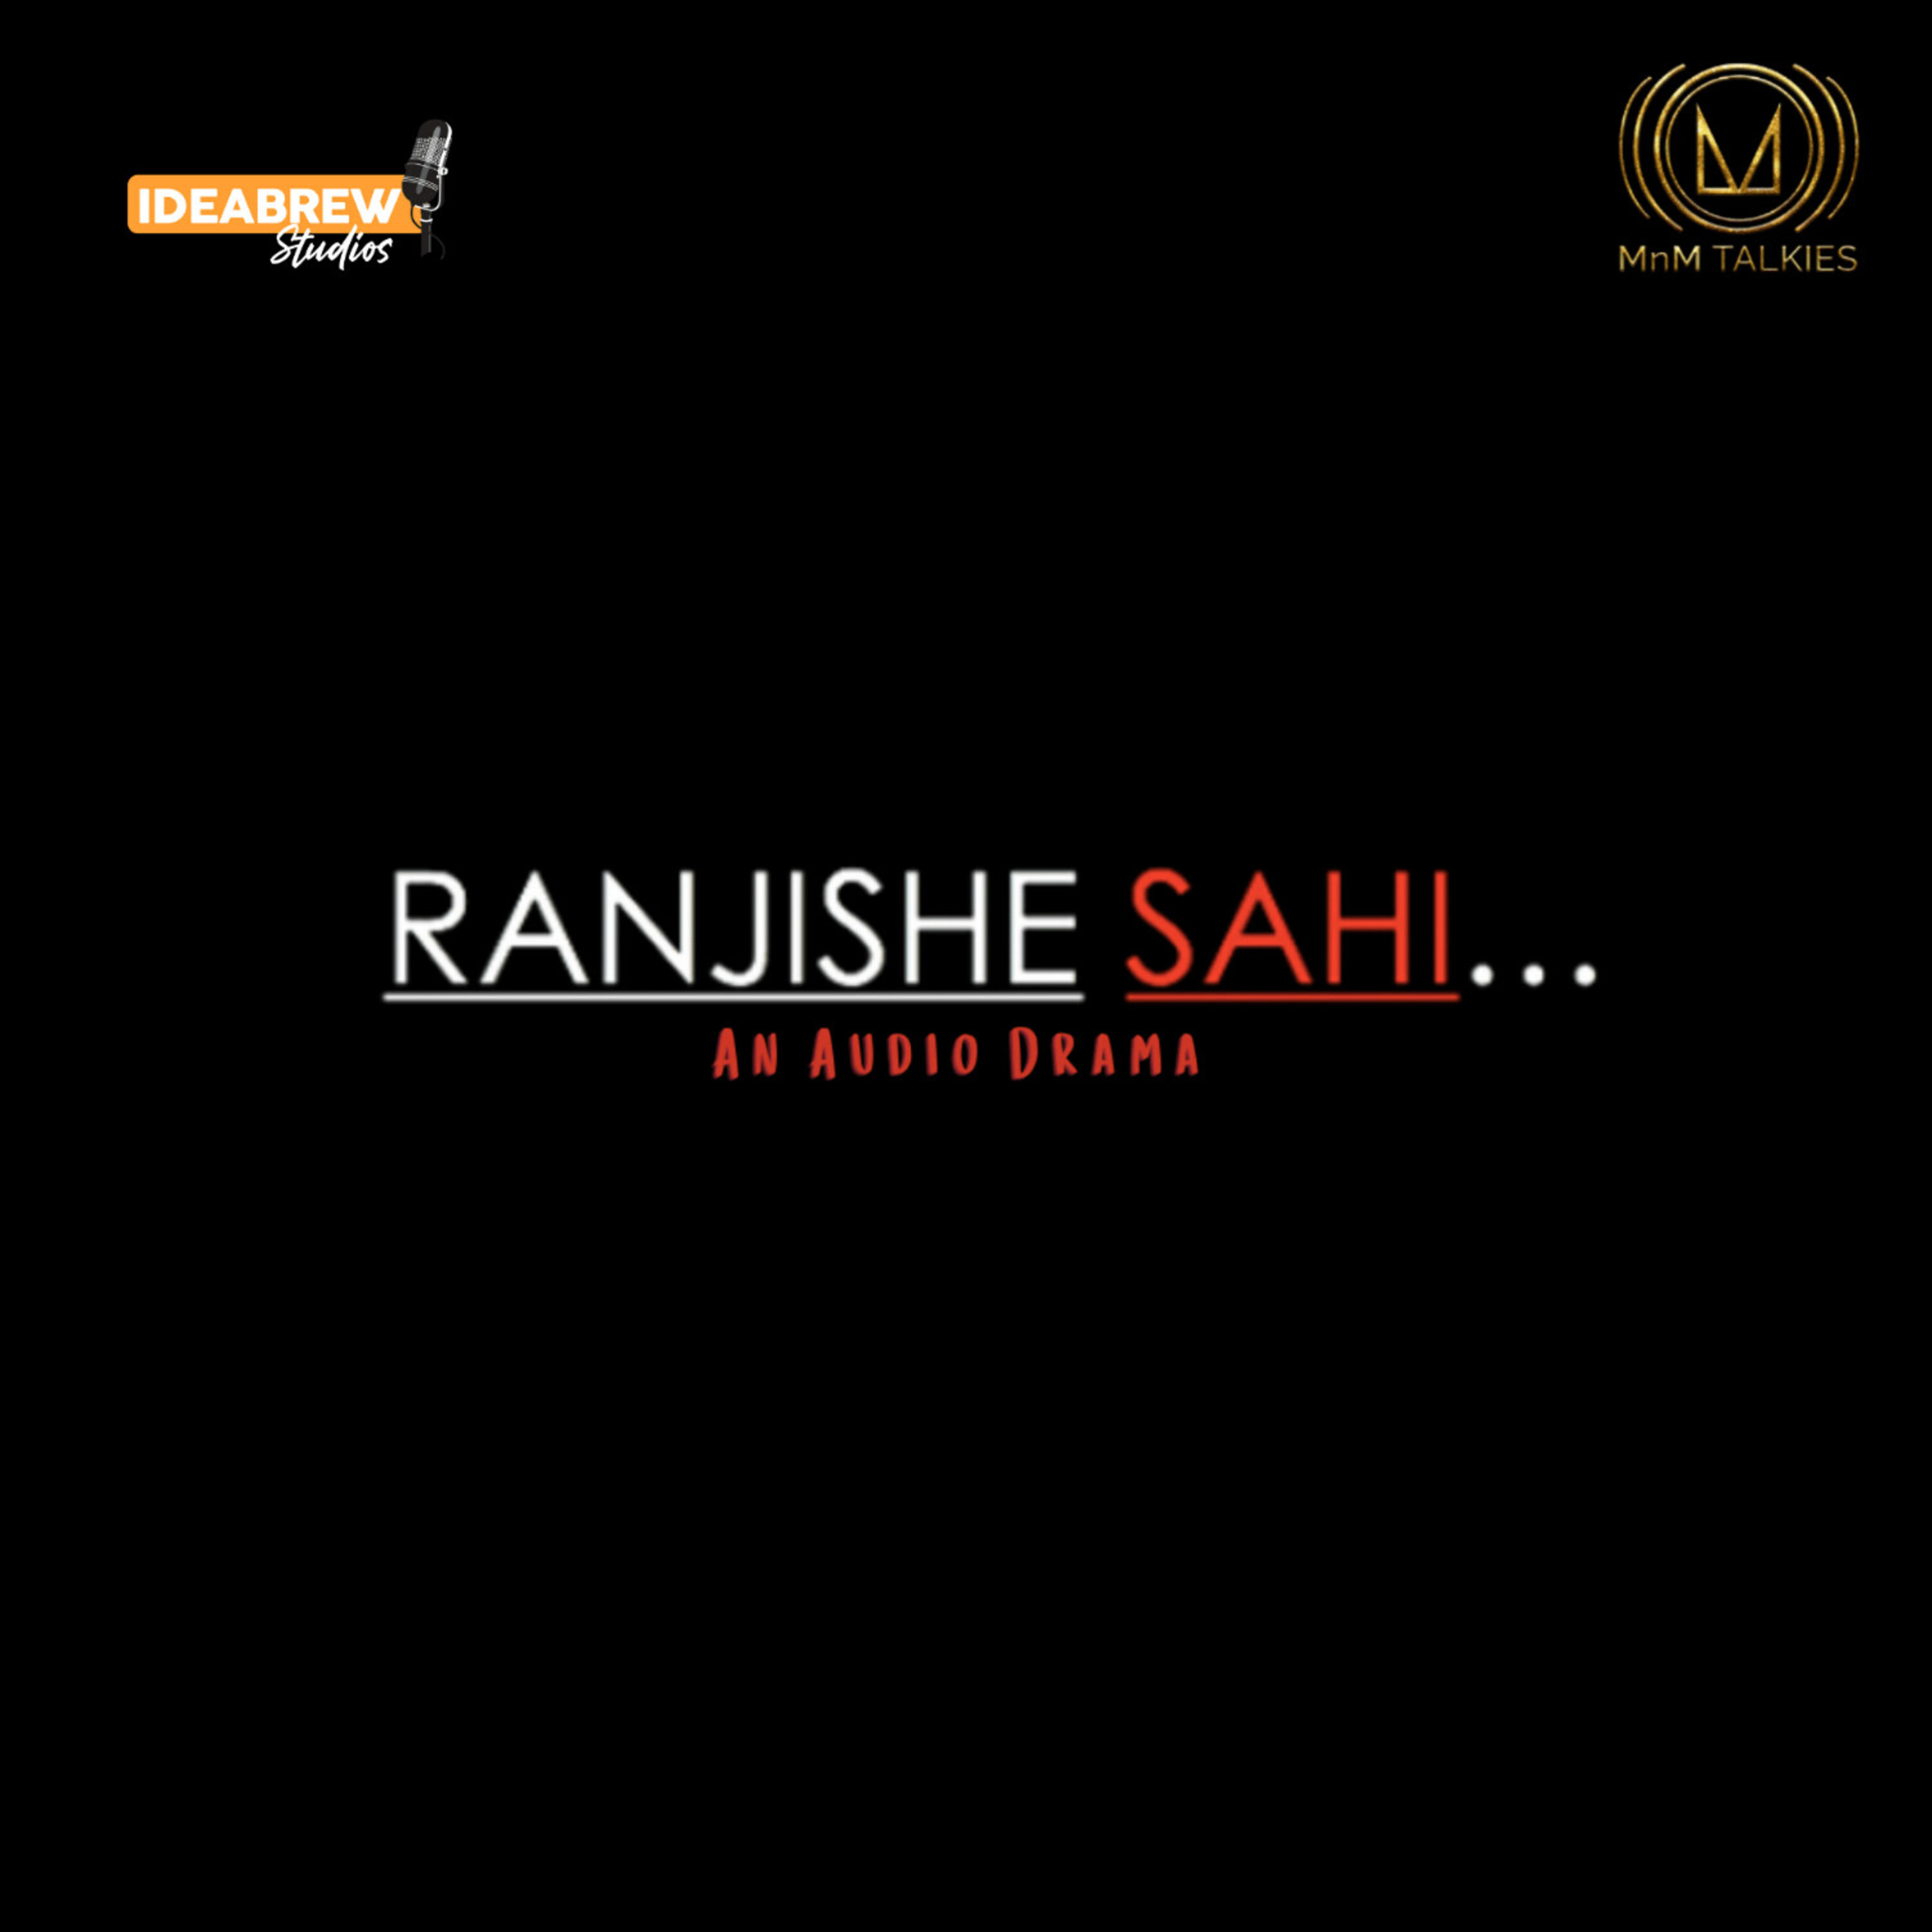 Ranjishe Sahi | Episode 2